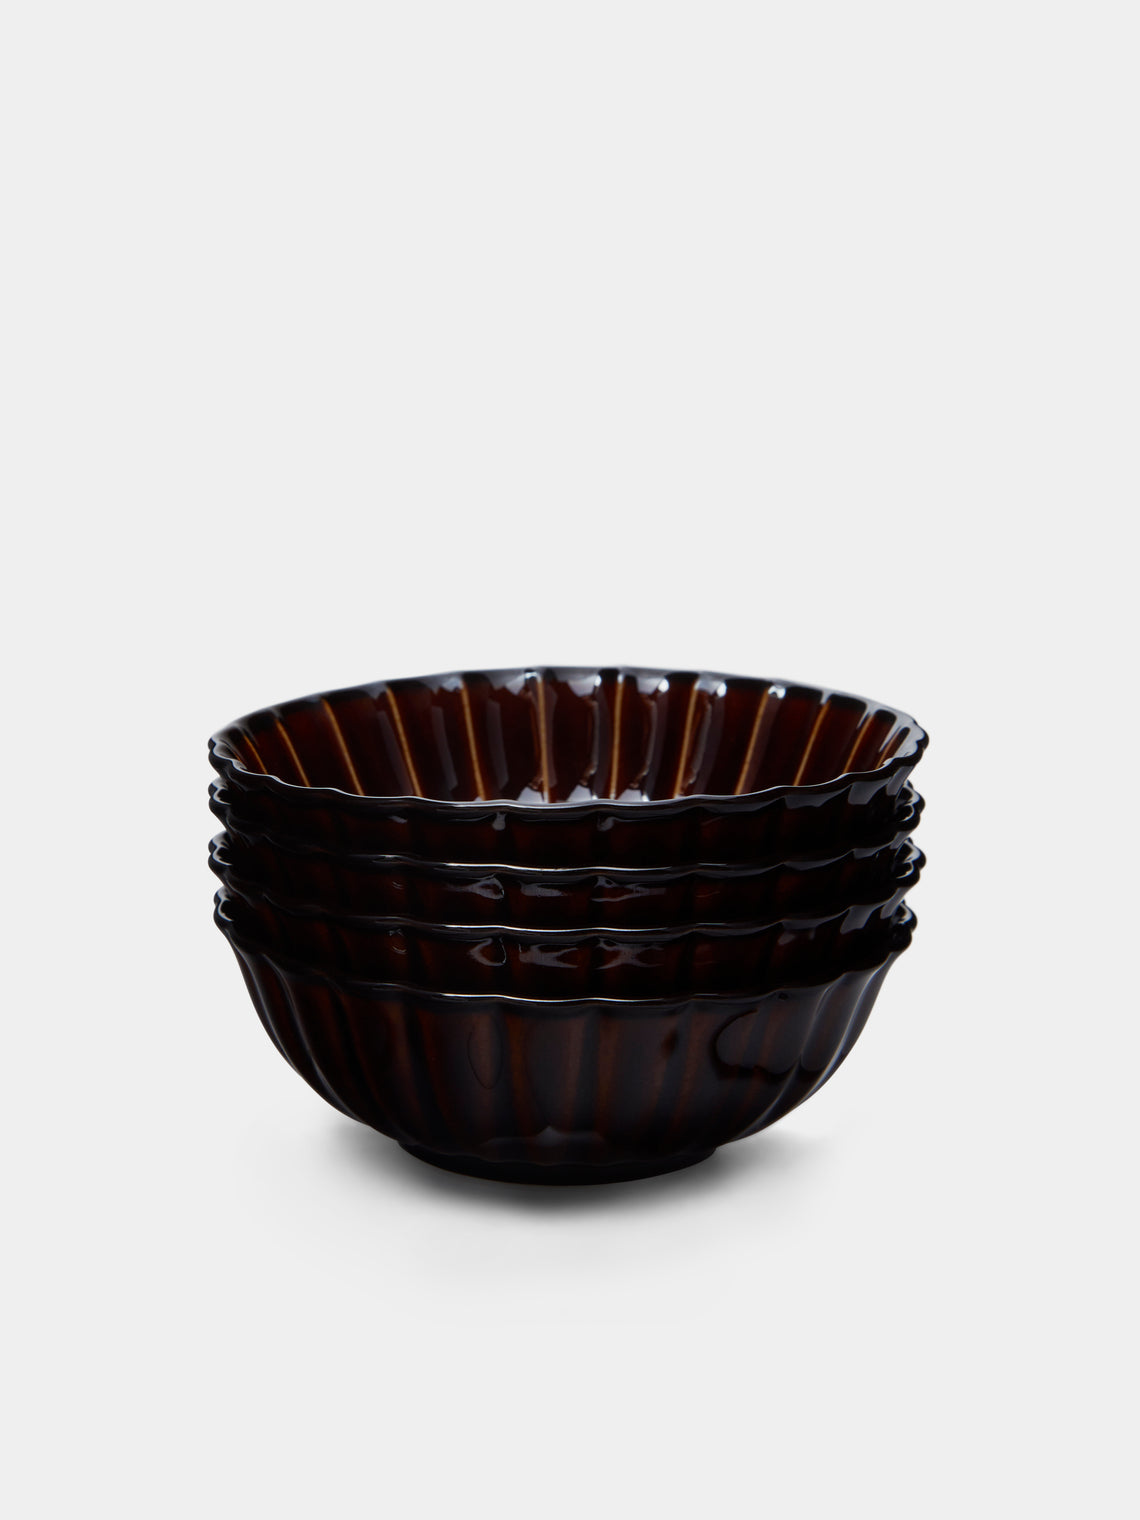 Kaneko Kohyo - Giyaman Urushi Ceramic Shallow Bowls (Set of 4) - Brown - ABASK